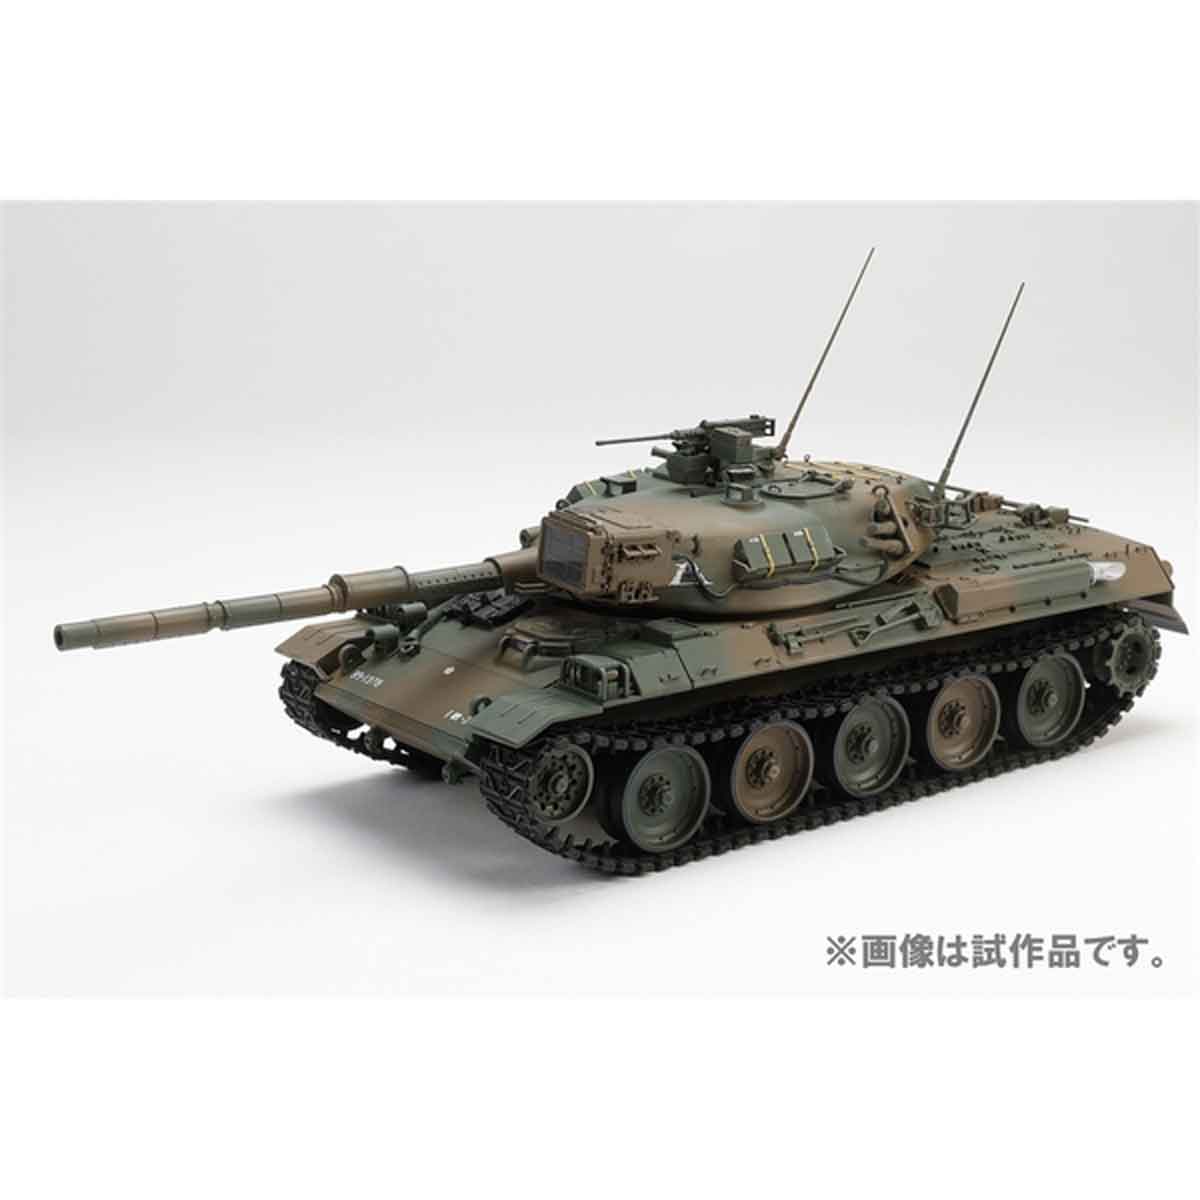 タミヤ 1/35 陸上自衛隊 74式戦車 完成品 - プラモデル